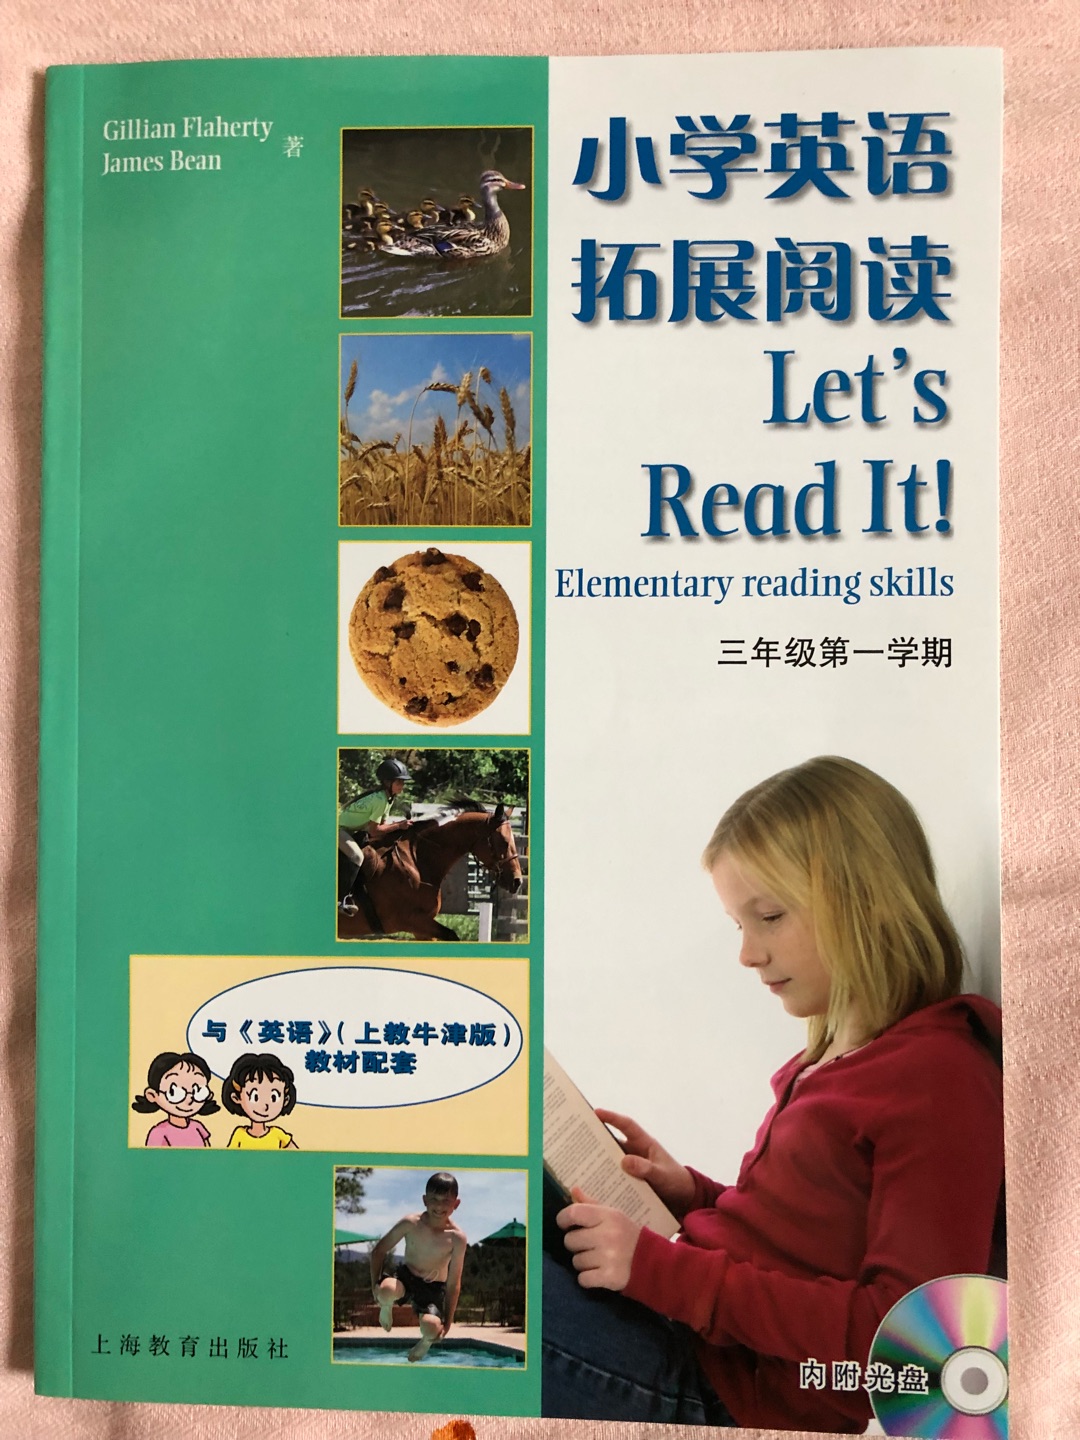 ??小学英语拓展阅读3A（附光盘1张），学校老师推荐的英语辅导书，希望能有助于提高女儿英语阅读能力。